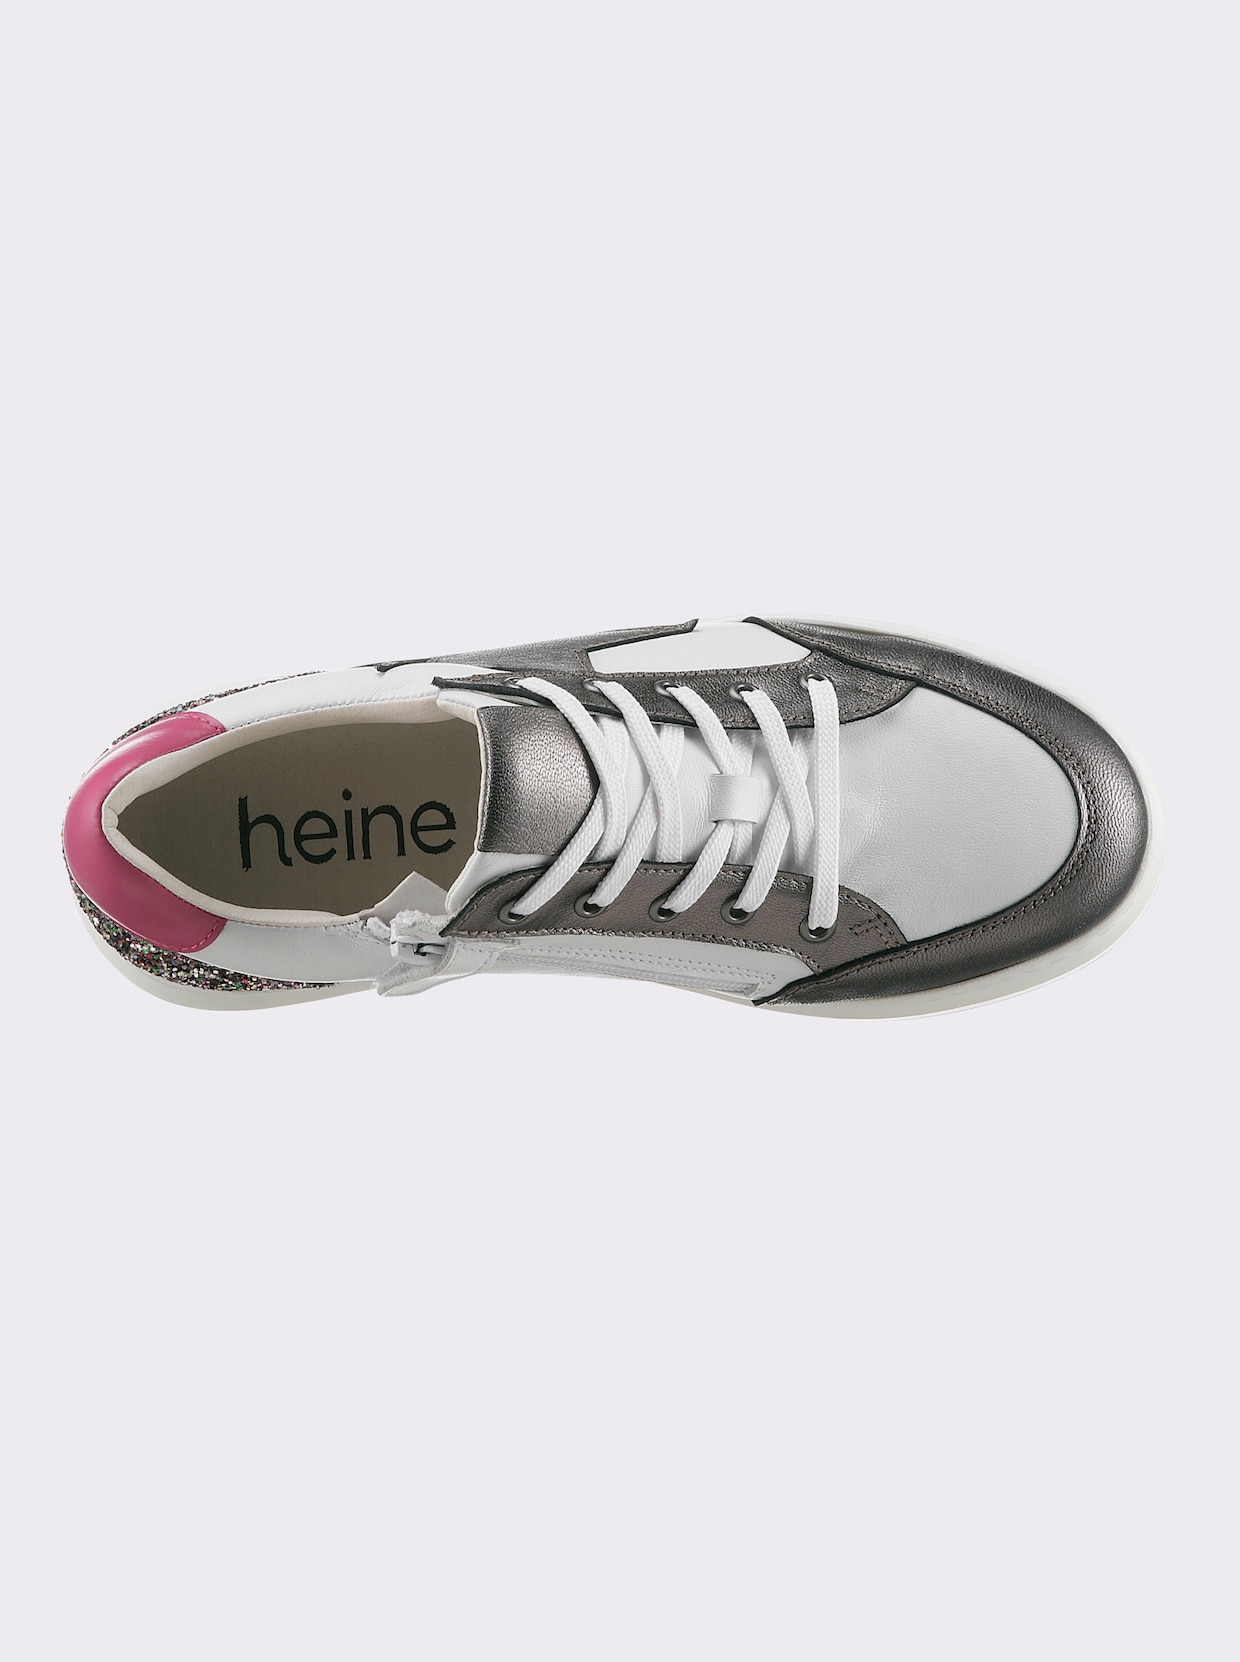 heine Sneaker - wit/antraciet gedessineerd